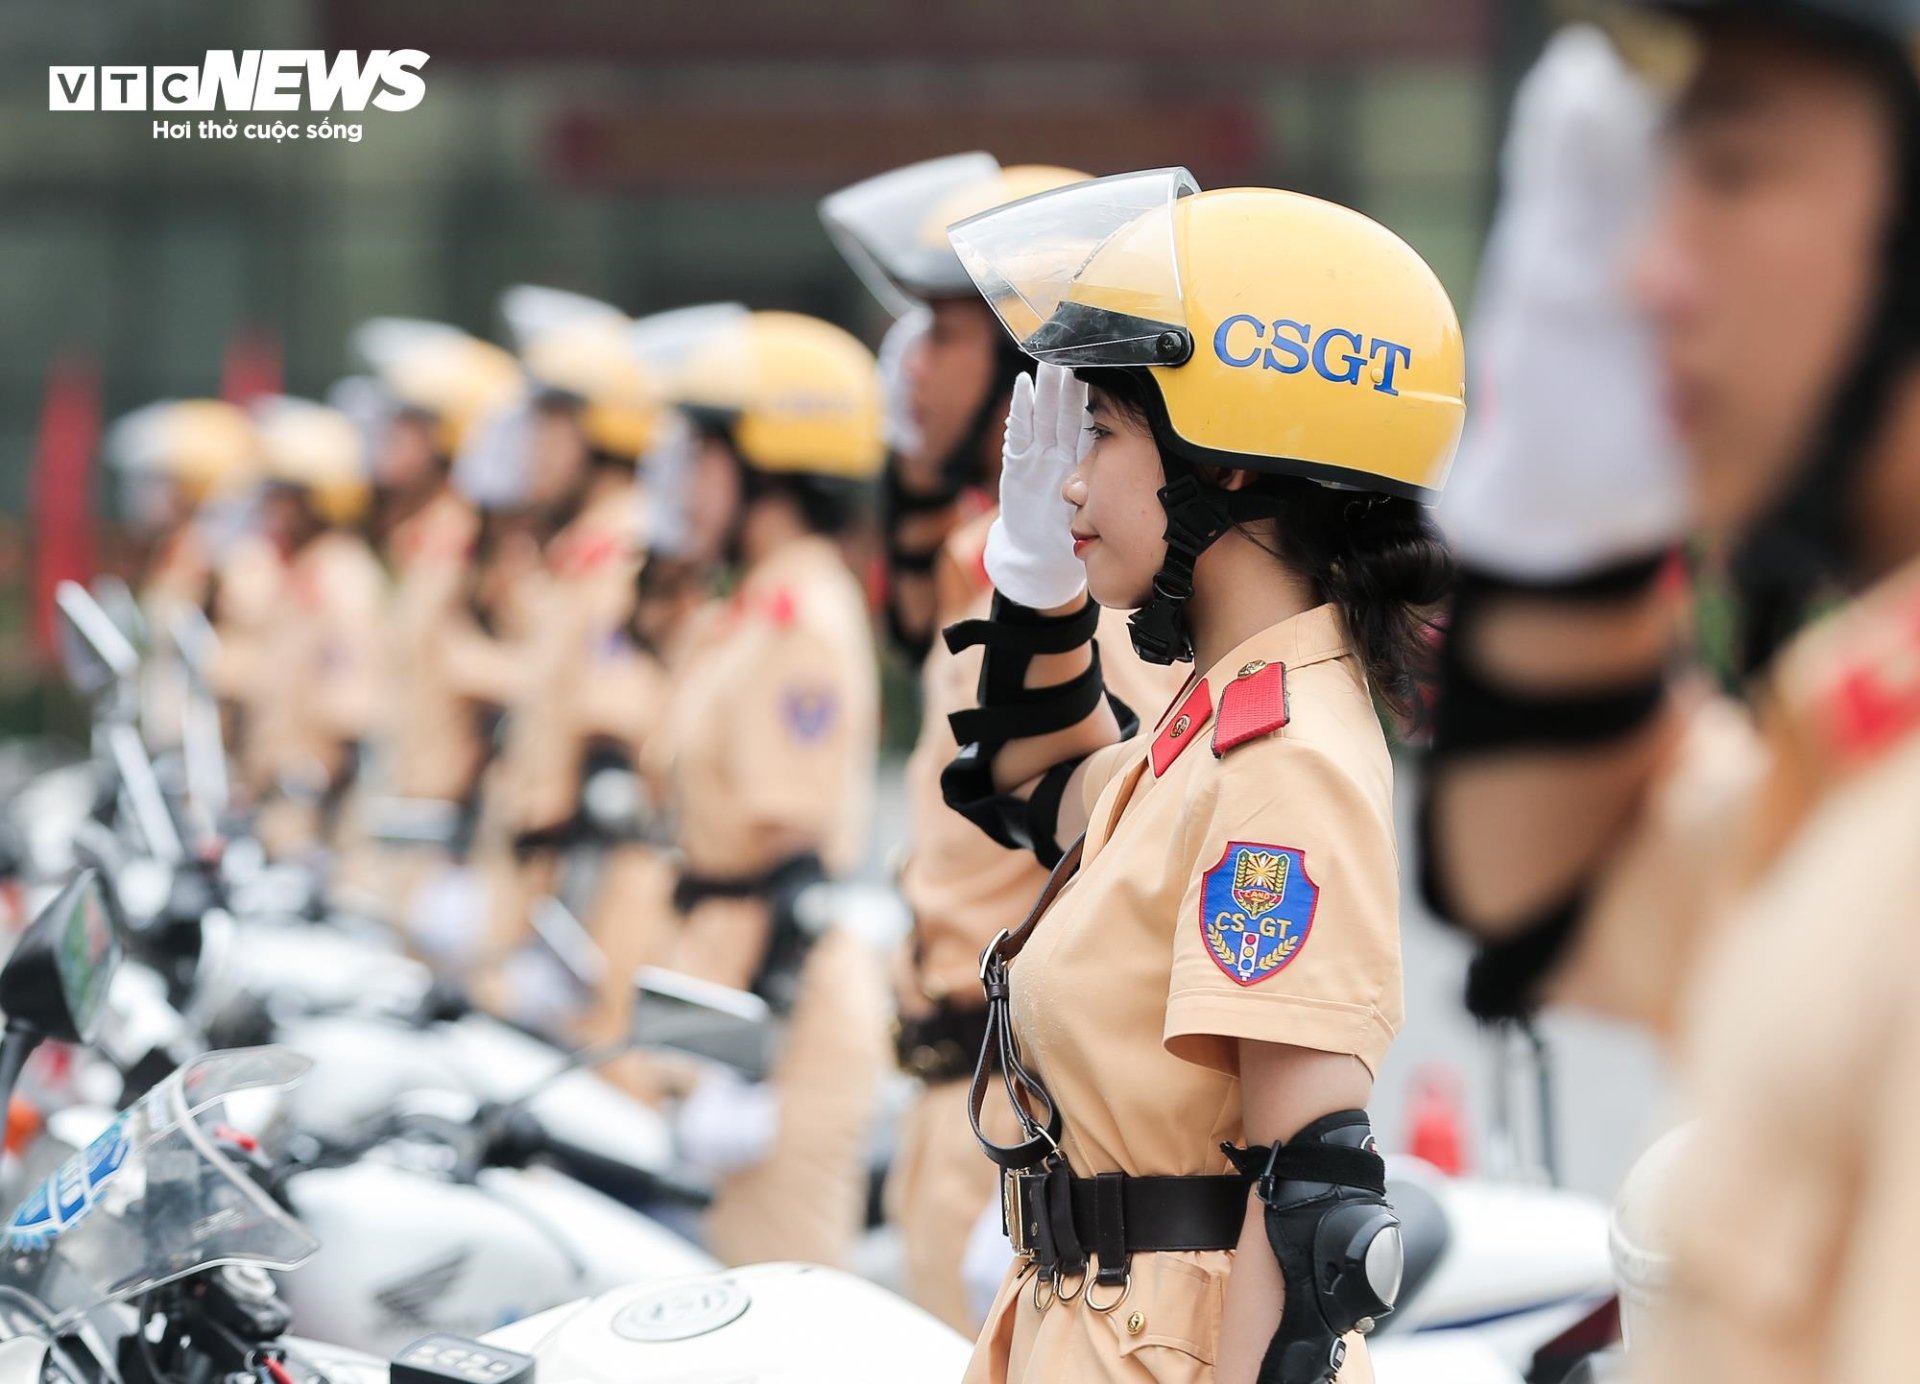 Mãn nhãn màn biểu diễn chạy xe phân khối lớn của nữ học viên Cảnh sát Nhân dân - Ảnh 8.